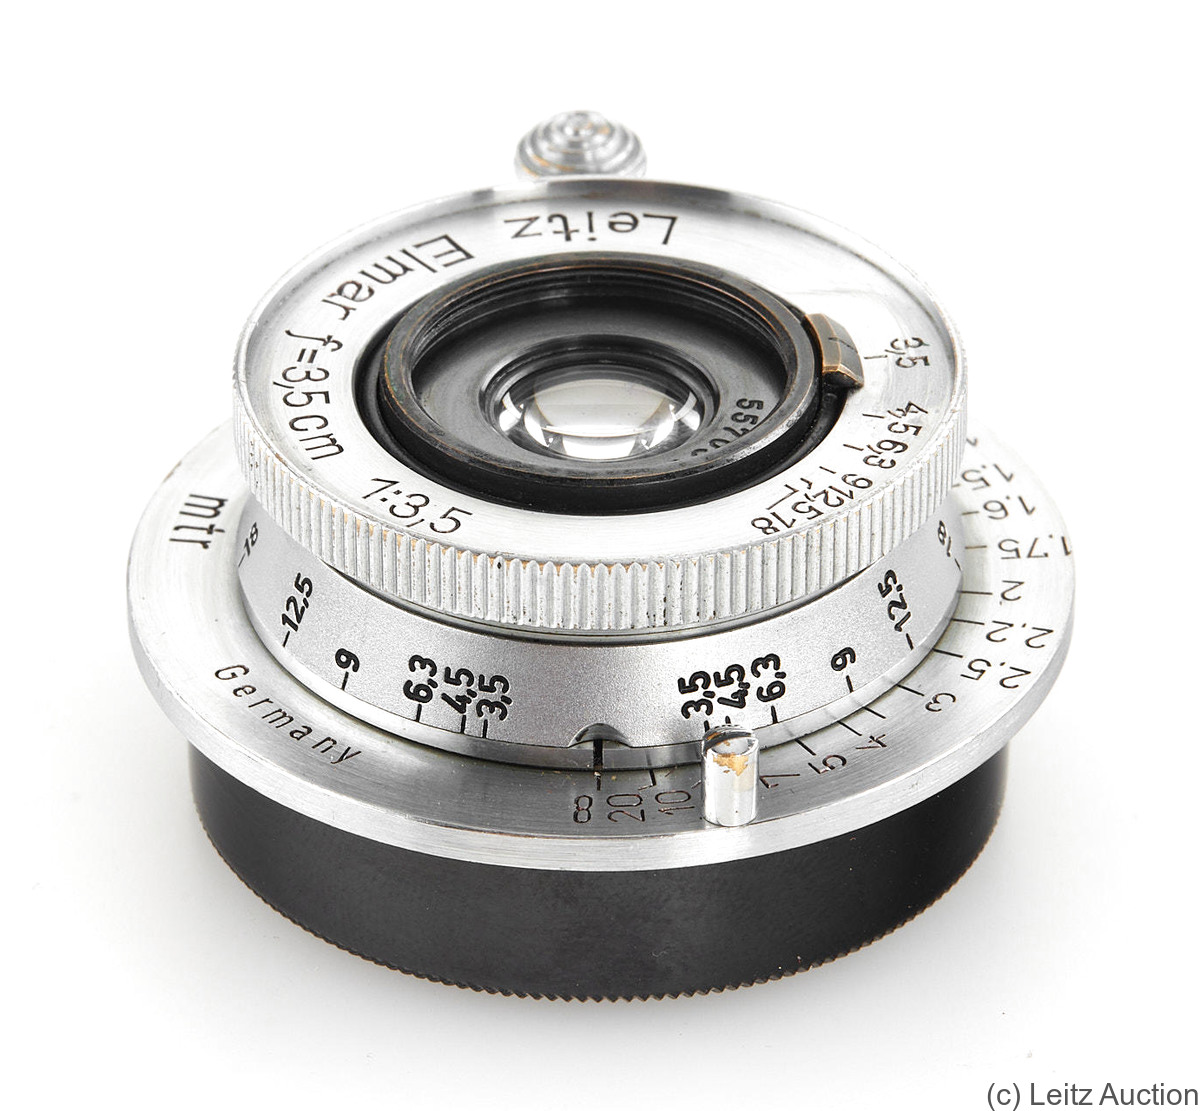 Leitz: 35mm (3.5cm) f3.5 Elmar (SM, chrome) camera